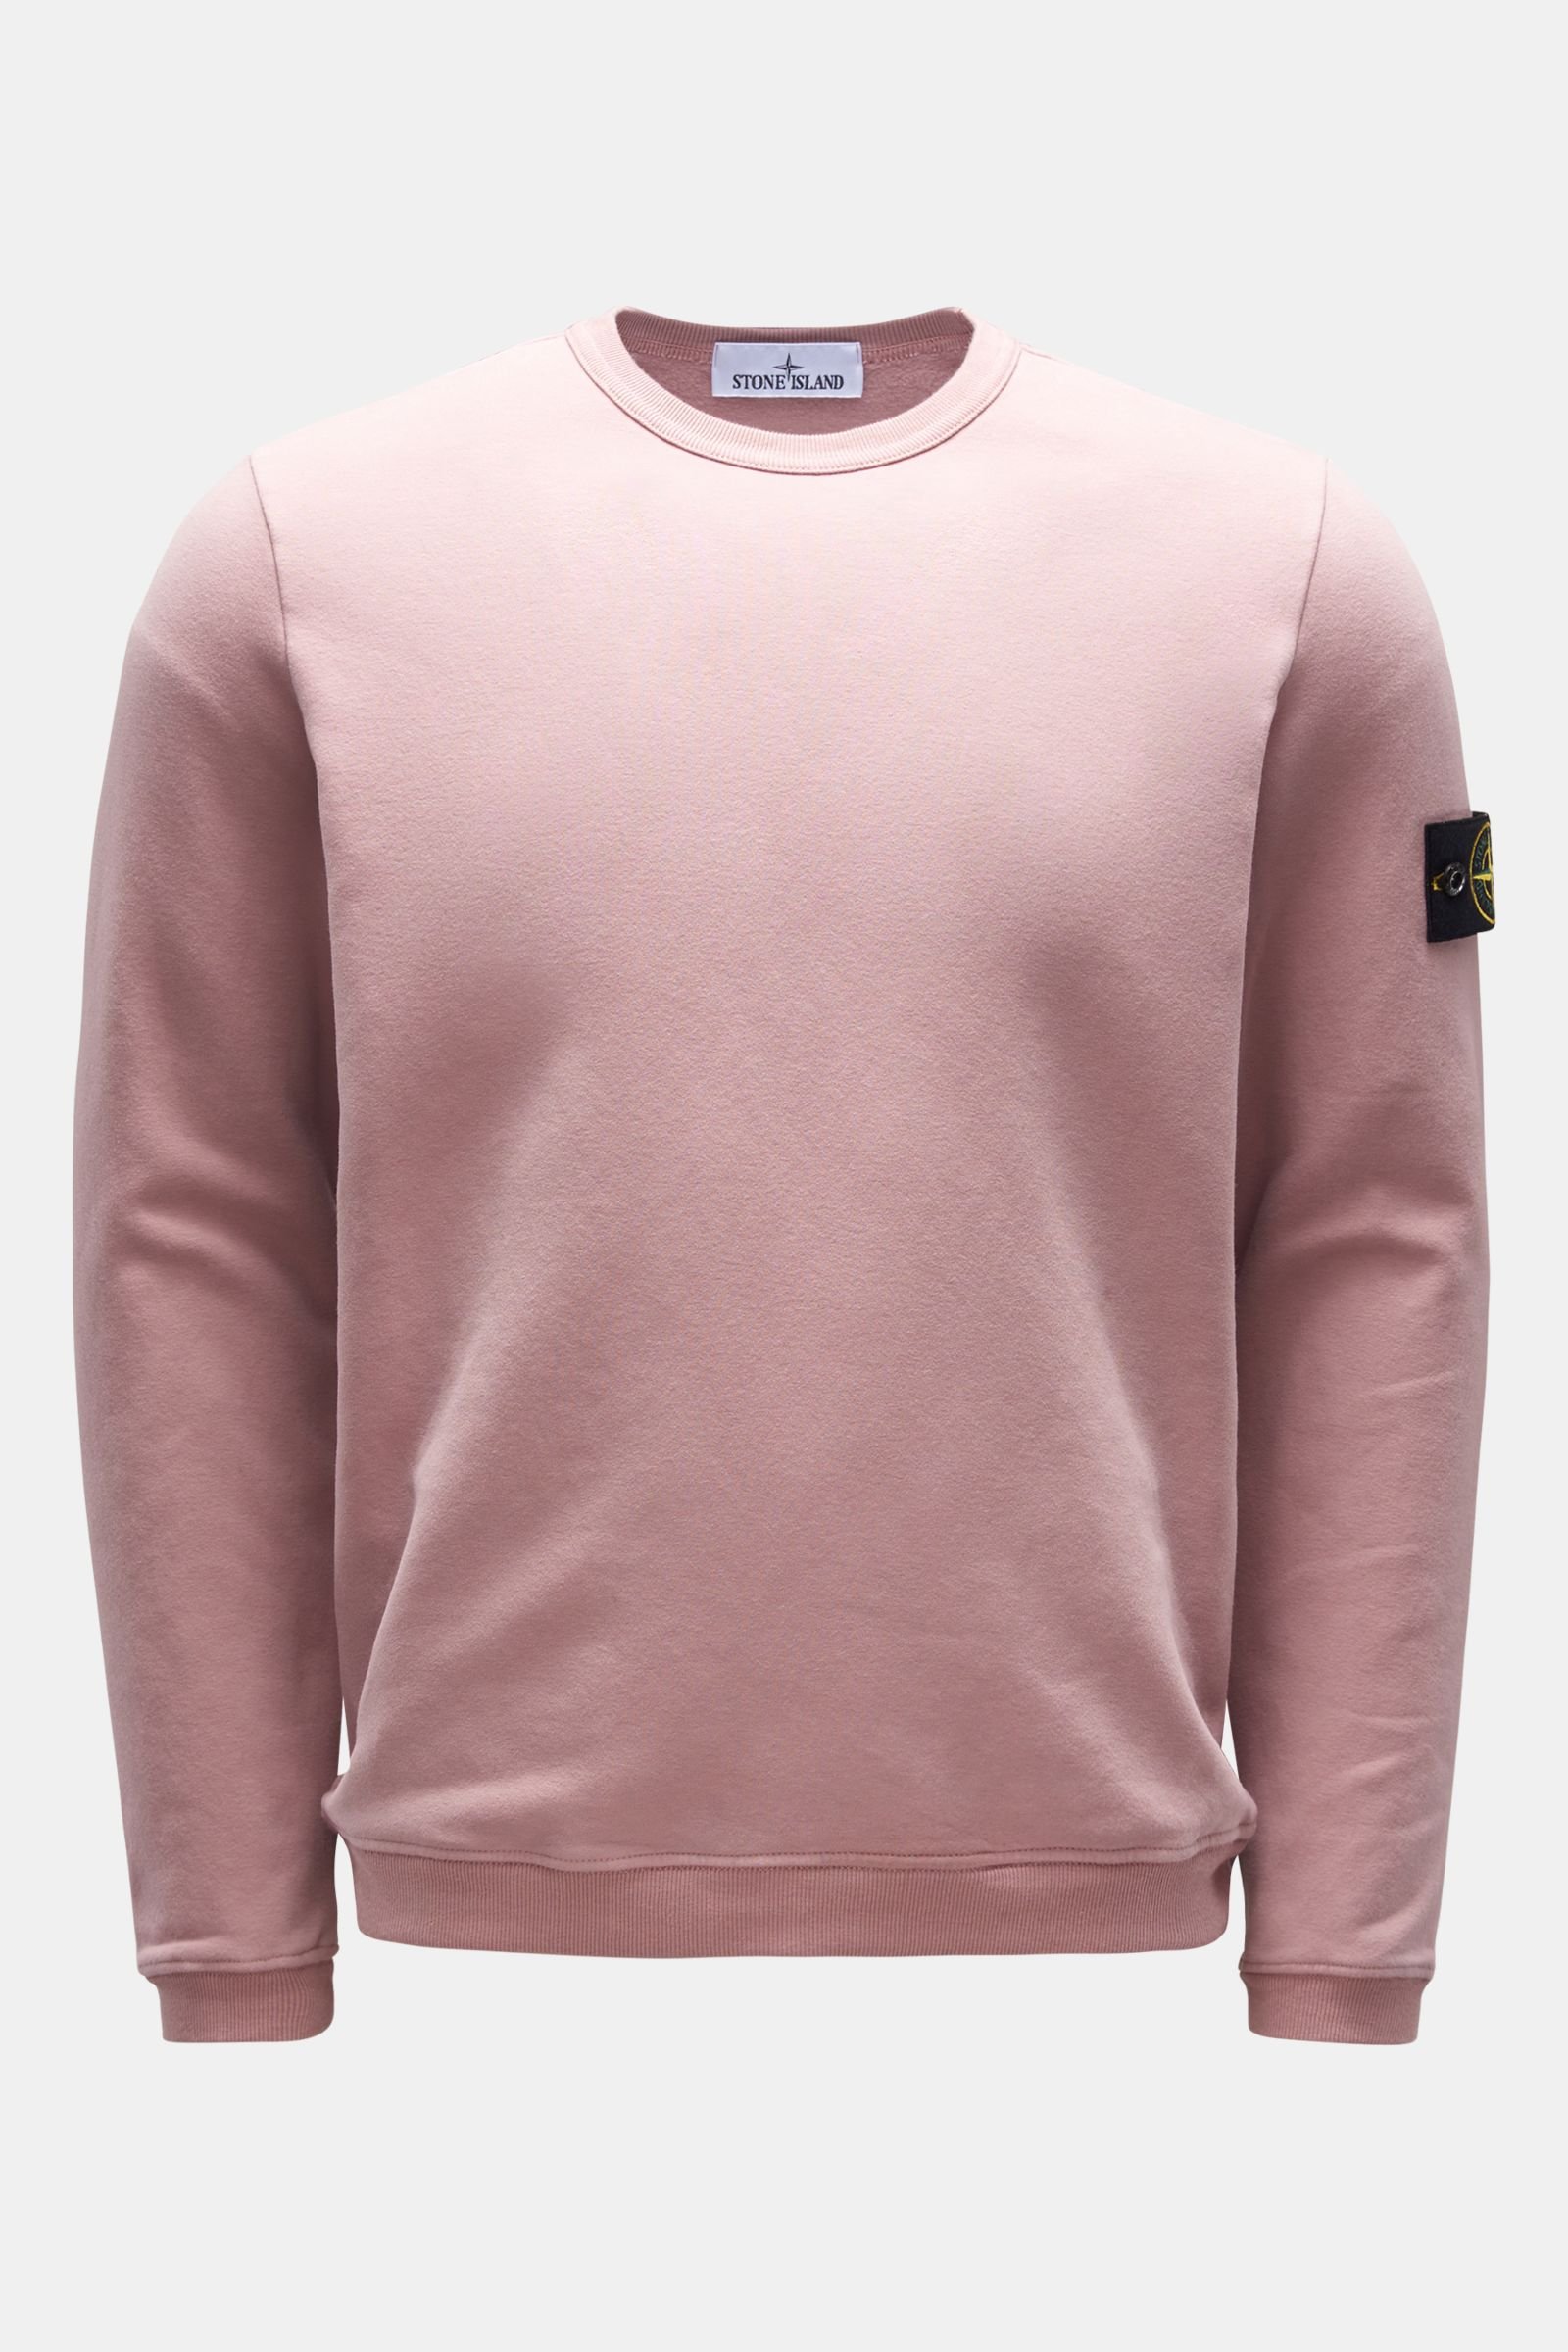 Crew neck sweatshirt antique pink